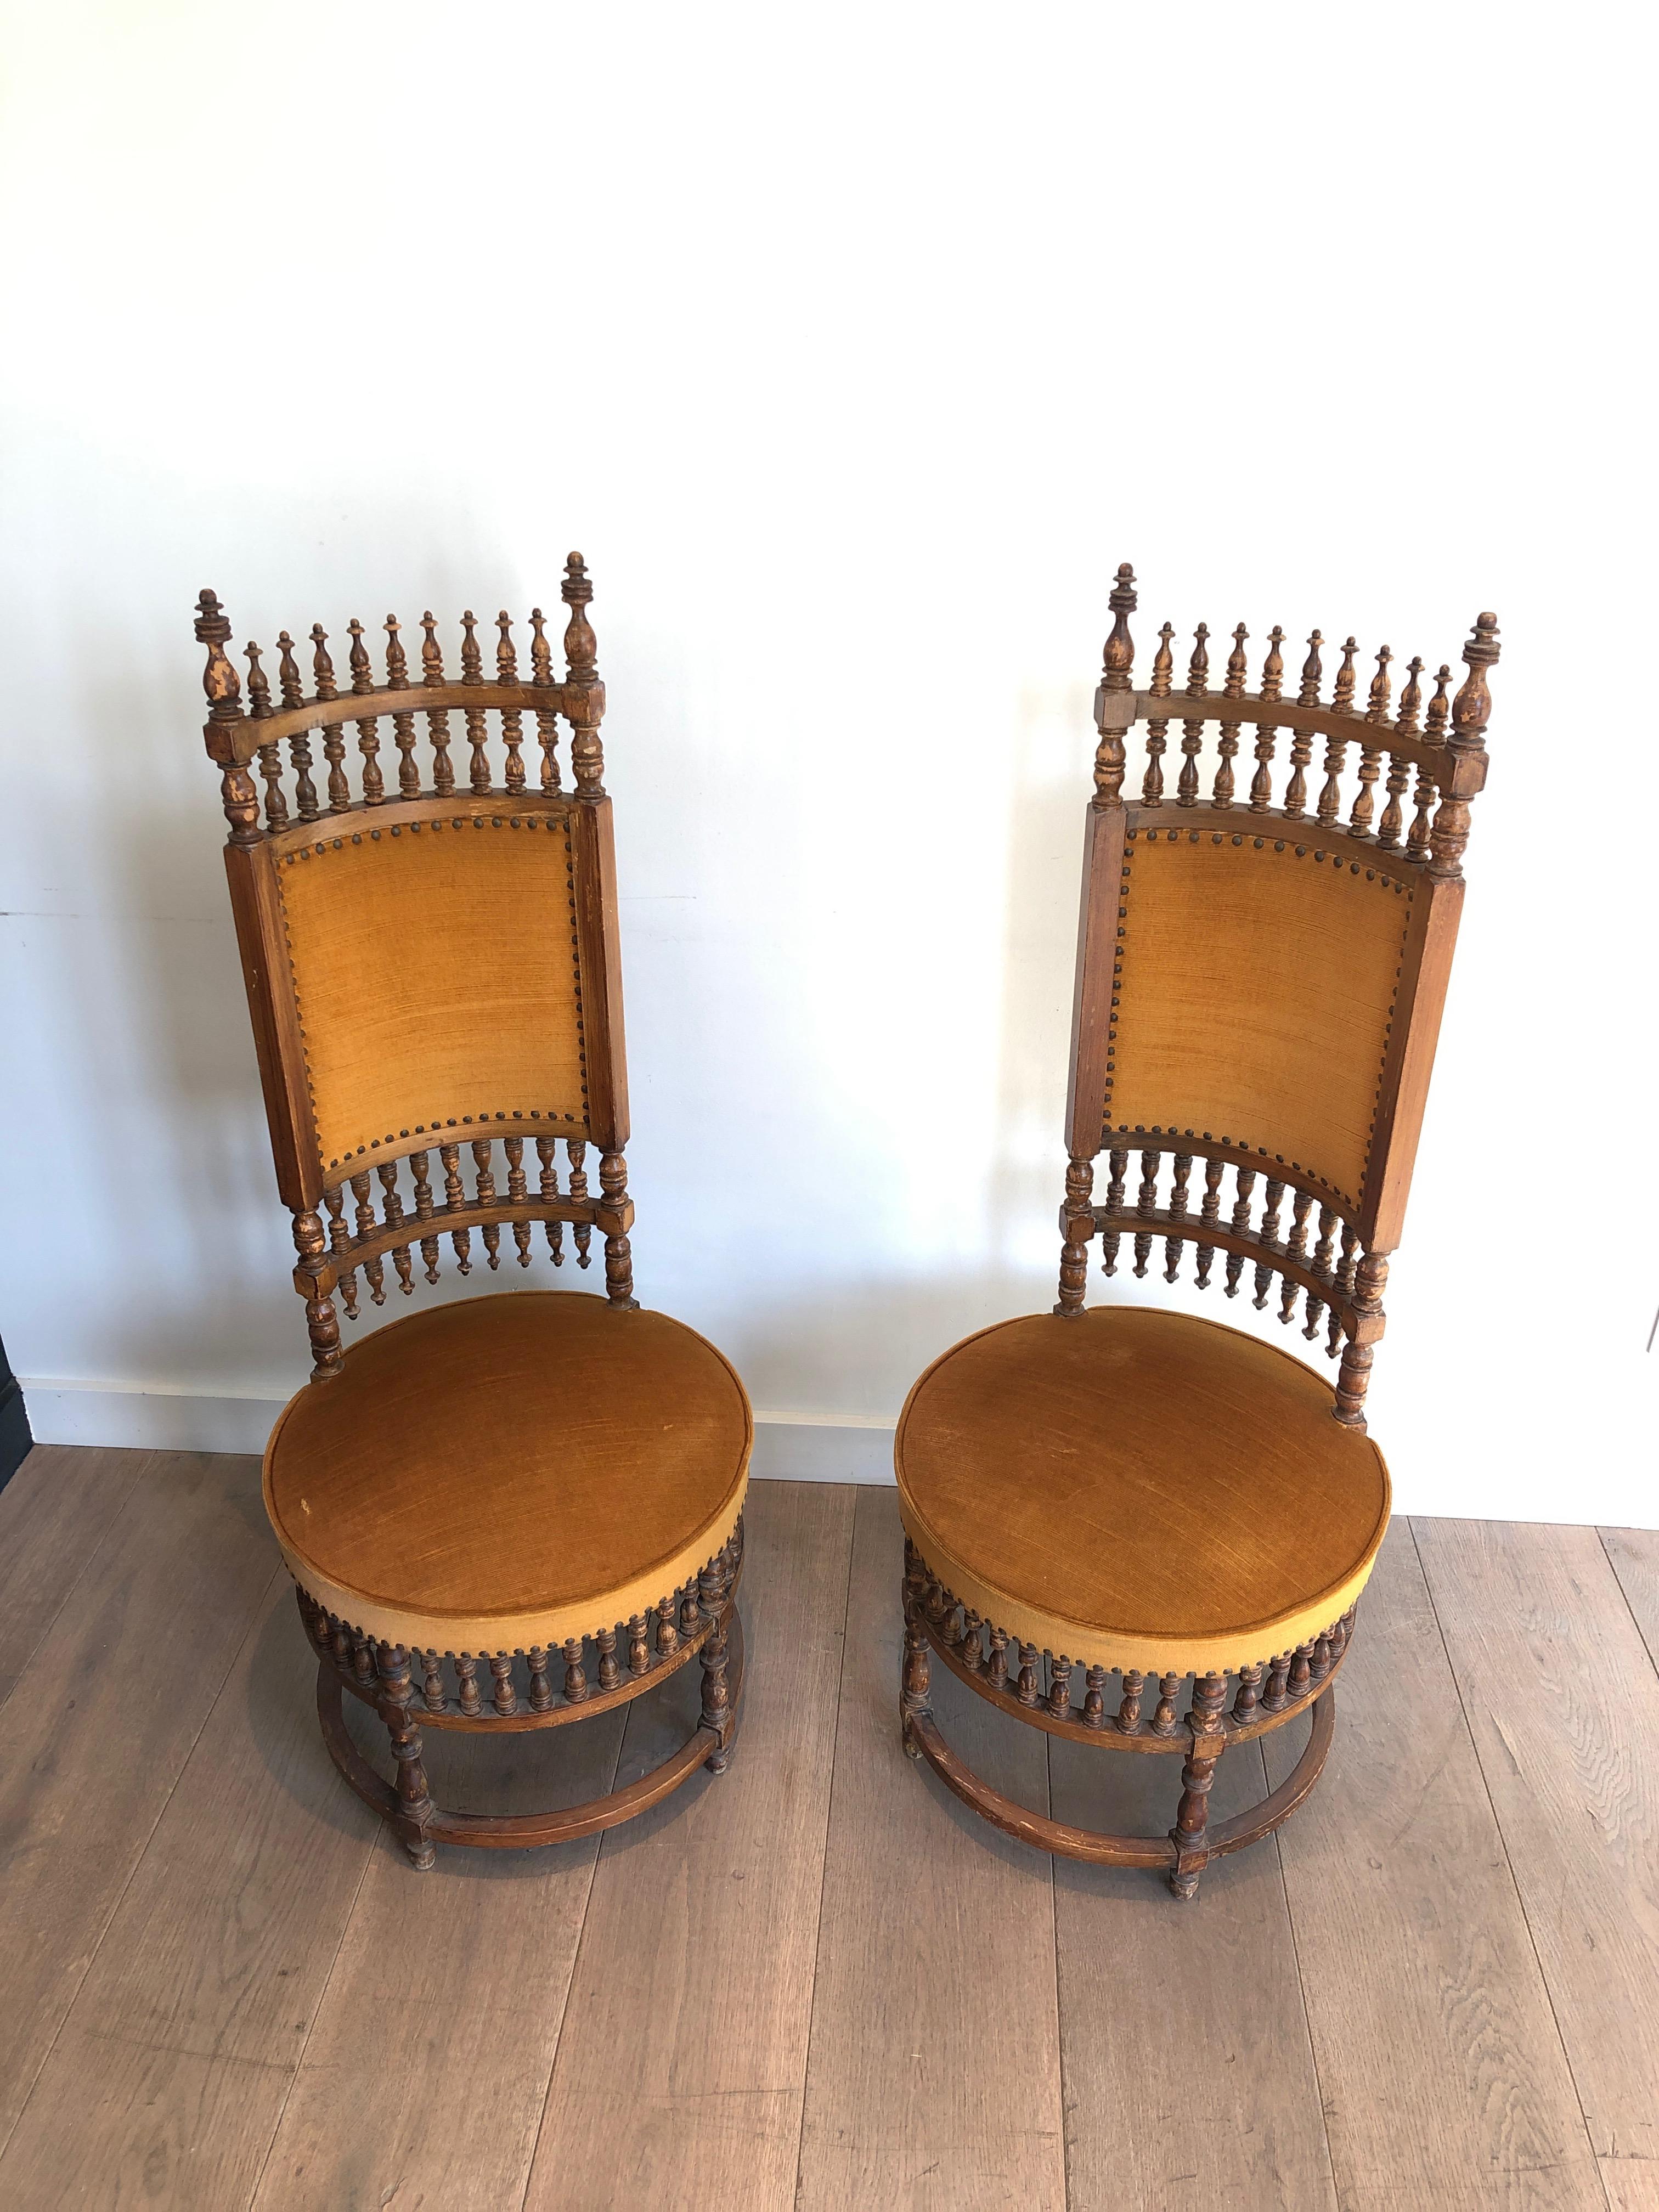 Cette paire de chaises très inhabituelles est fabriquée en bois et en tissu. Il s'agit d'une œuvre Arts & Crafts intéressante. Circa 1900